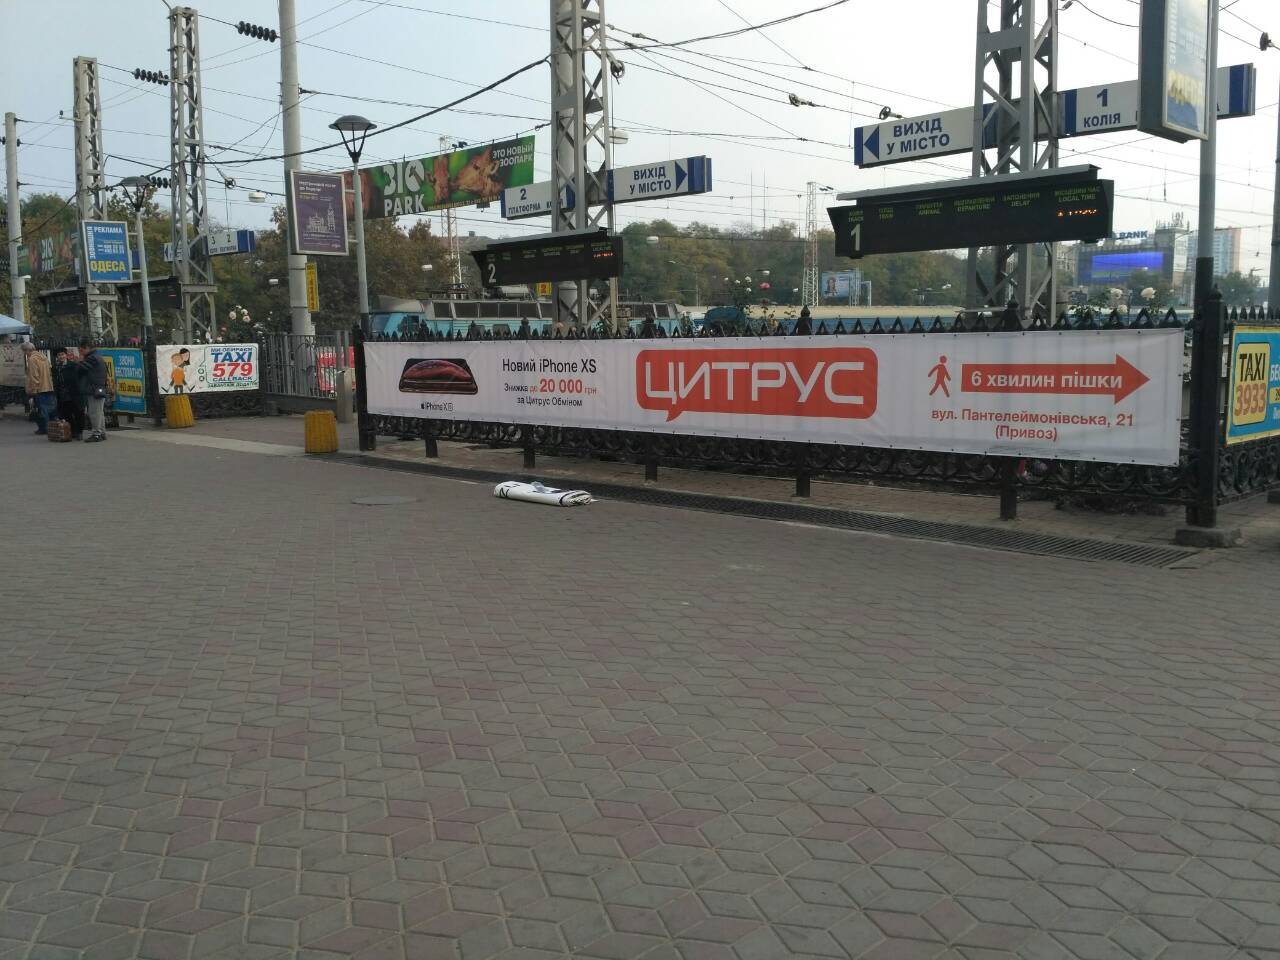 Реклама на всех ЖД вокзалах по всей Украине